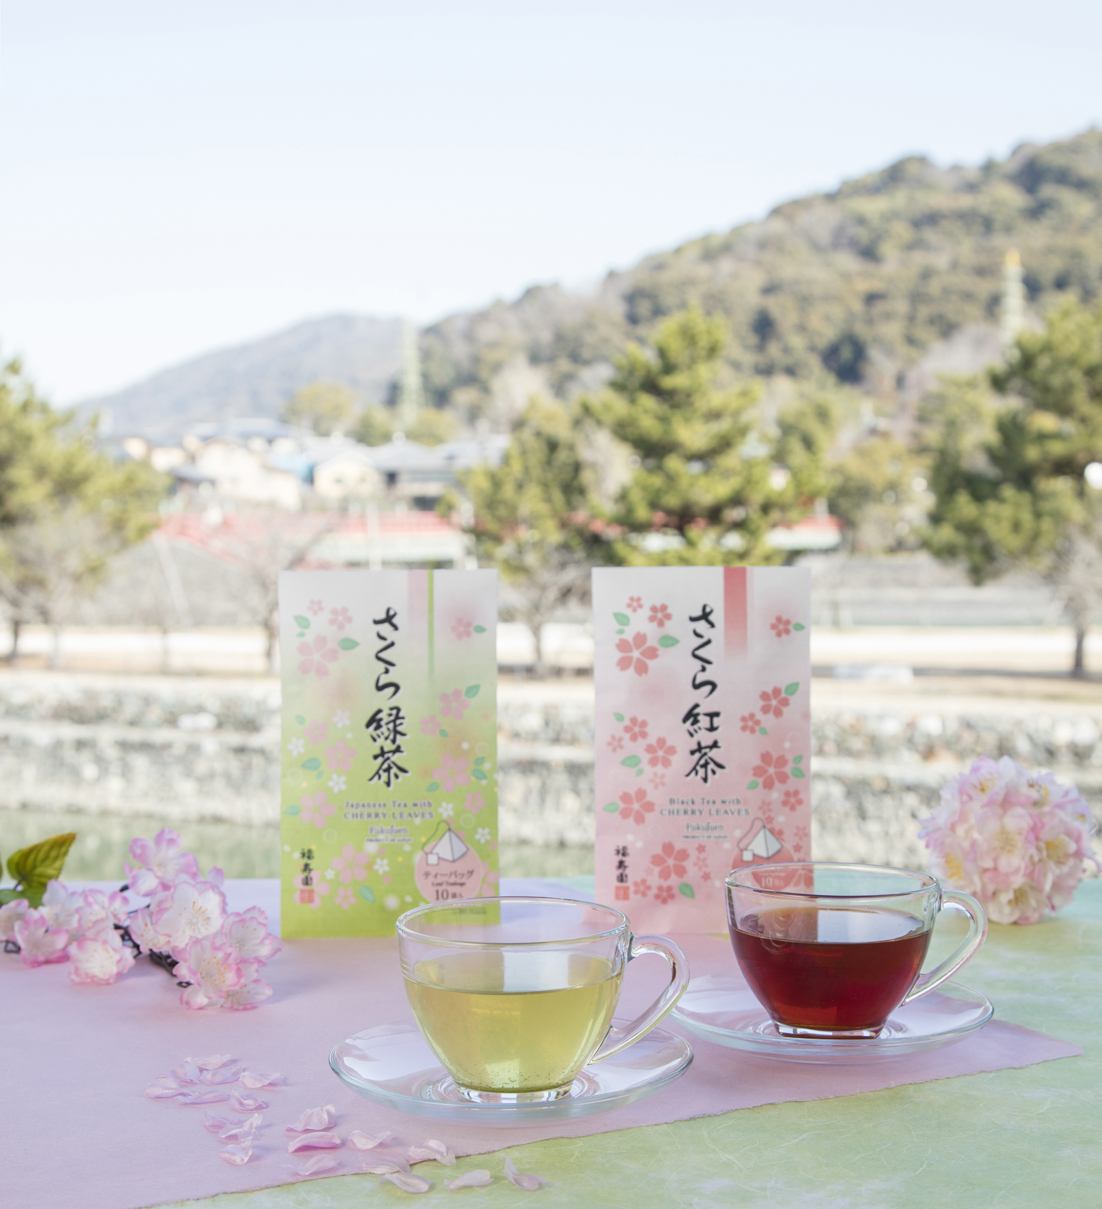 京の老舗茶舗 福寿園より「さくら緑茶 ティーバッグ」、「さくら紅茶